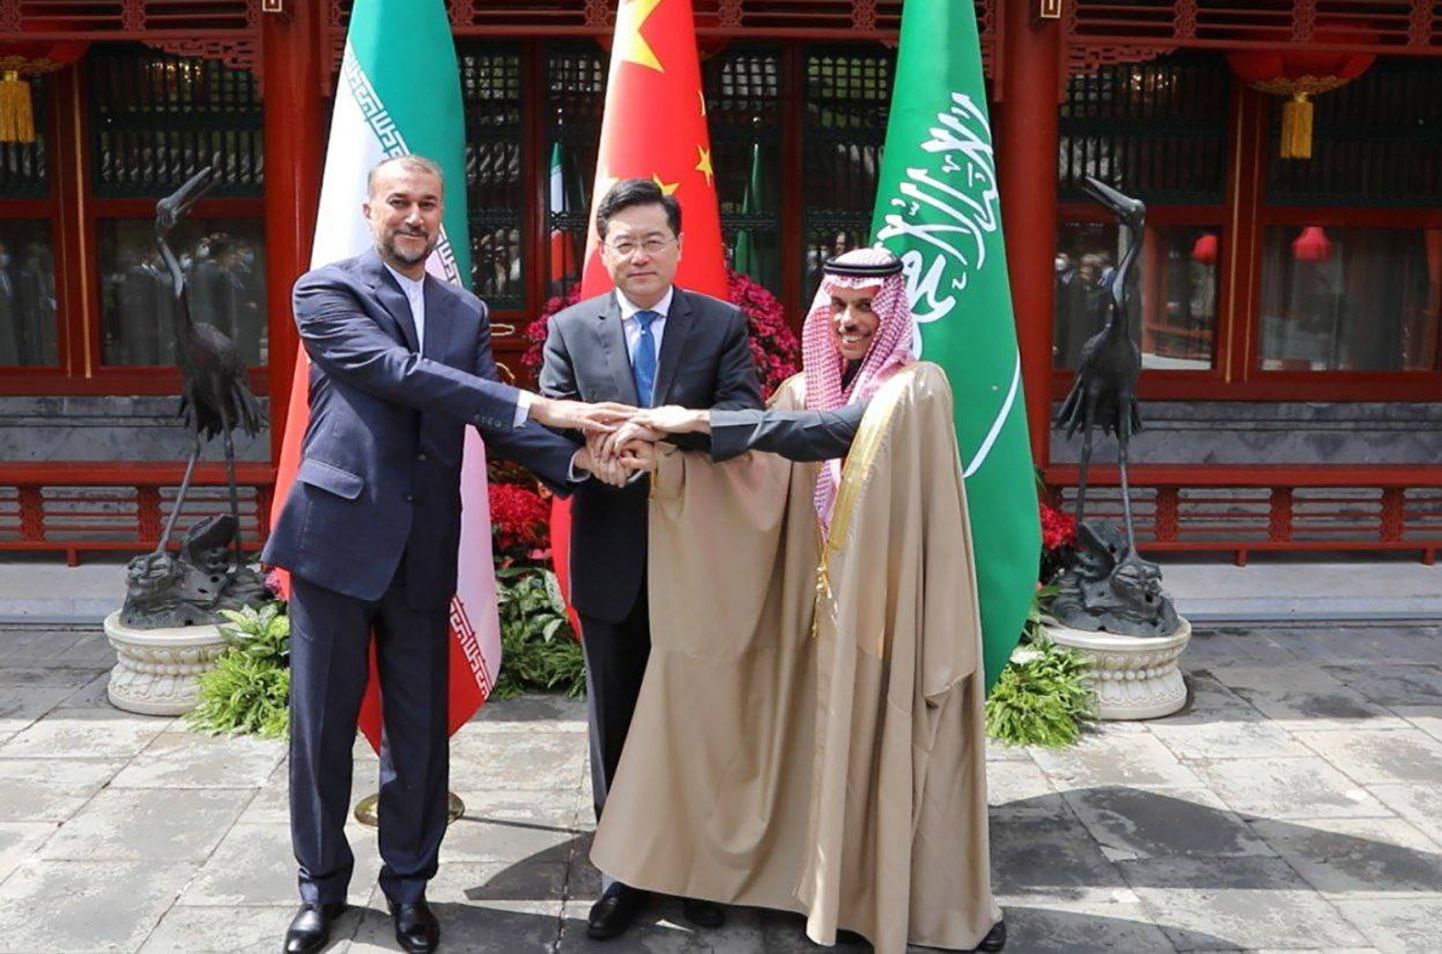 Iraani välisminister Hussein Amir-Abdoulahian (vasakul), Hiina välisminister Qin Gang (keskel) ja Saudi välisminister prints Faisal bin Farhan Al Saud (paremal) Pekingis.